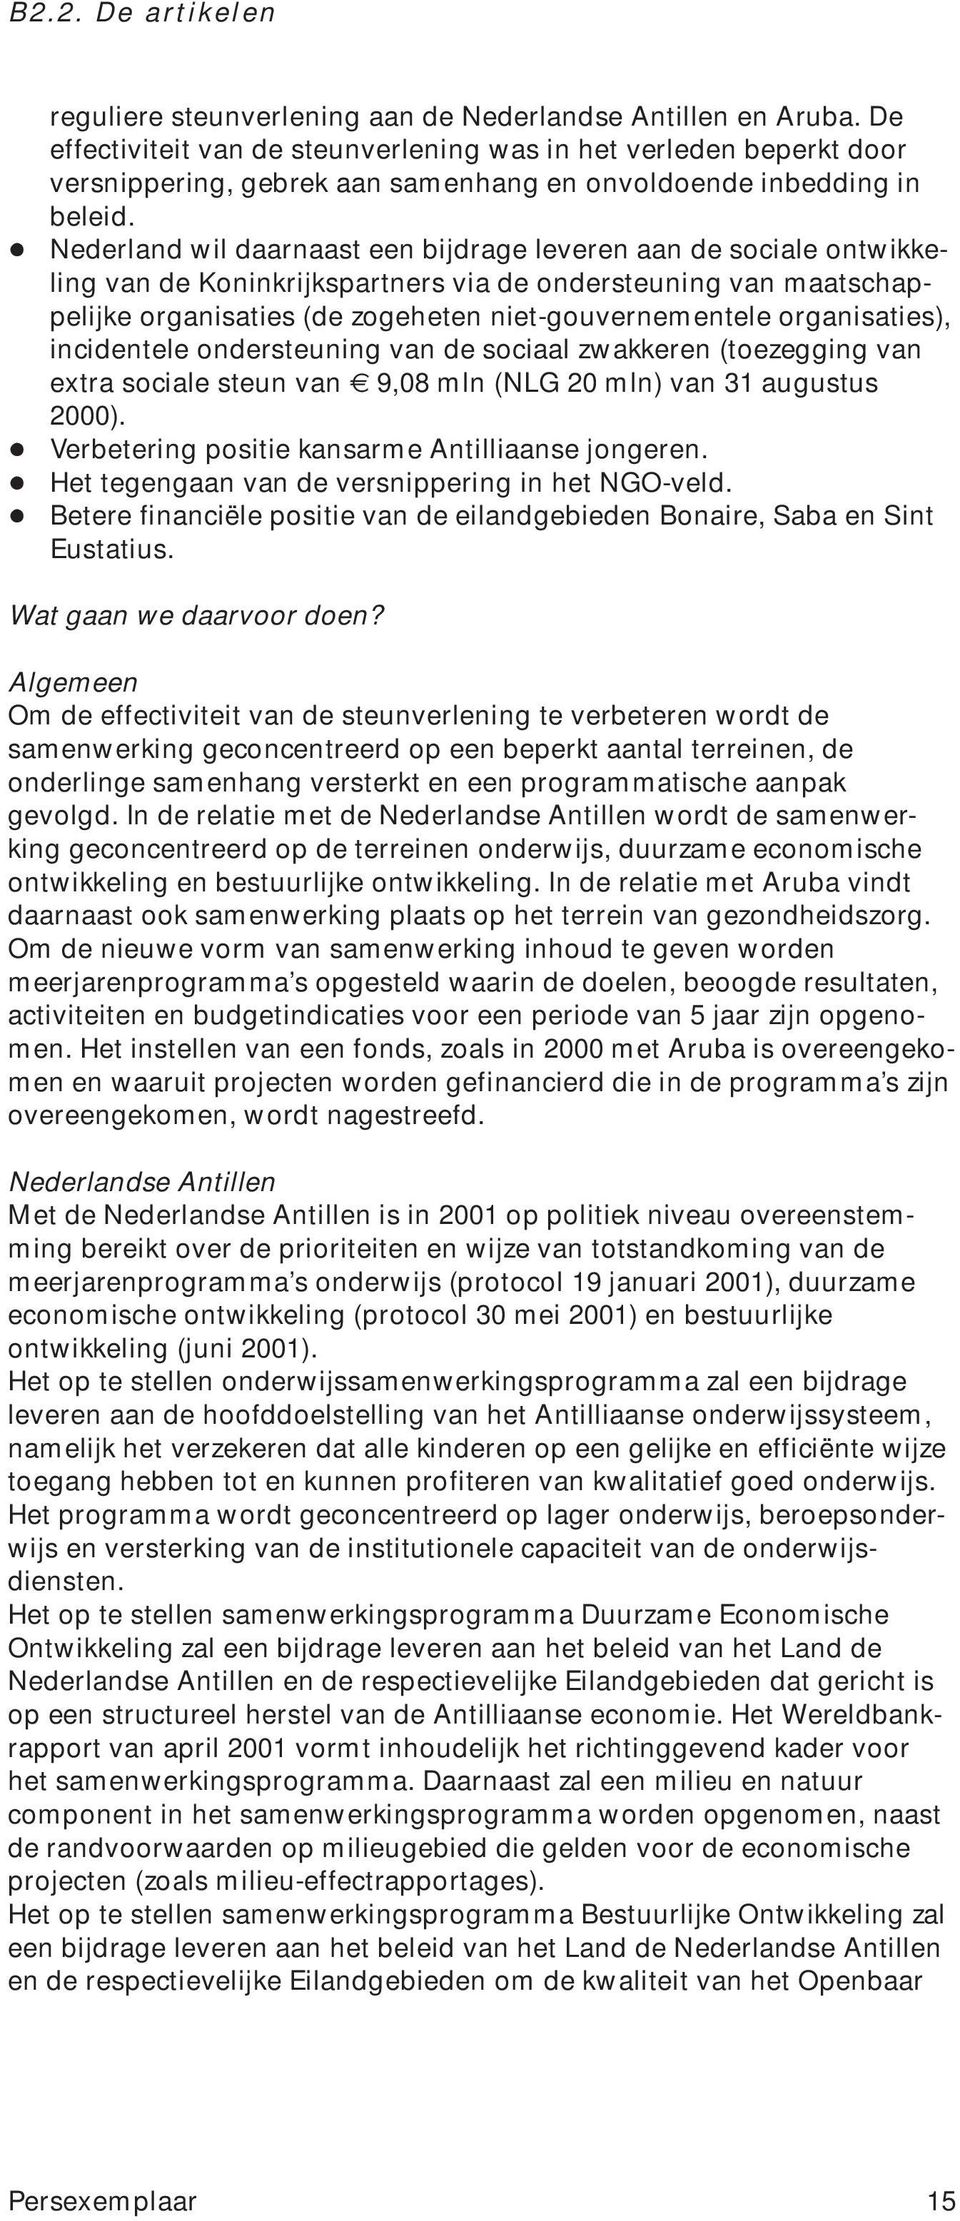 + Nederland wil daarnaast een bijdrage leveren aan de sociale ontwikkeling van de Koninkrijkspartners via de ondersteuning van maatschappelijke organisaties (de zogeheten niet-gouvernementele